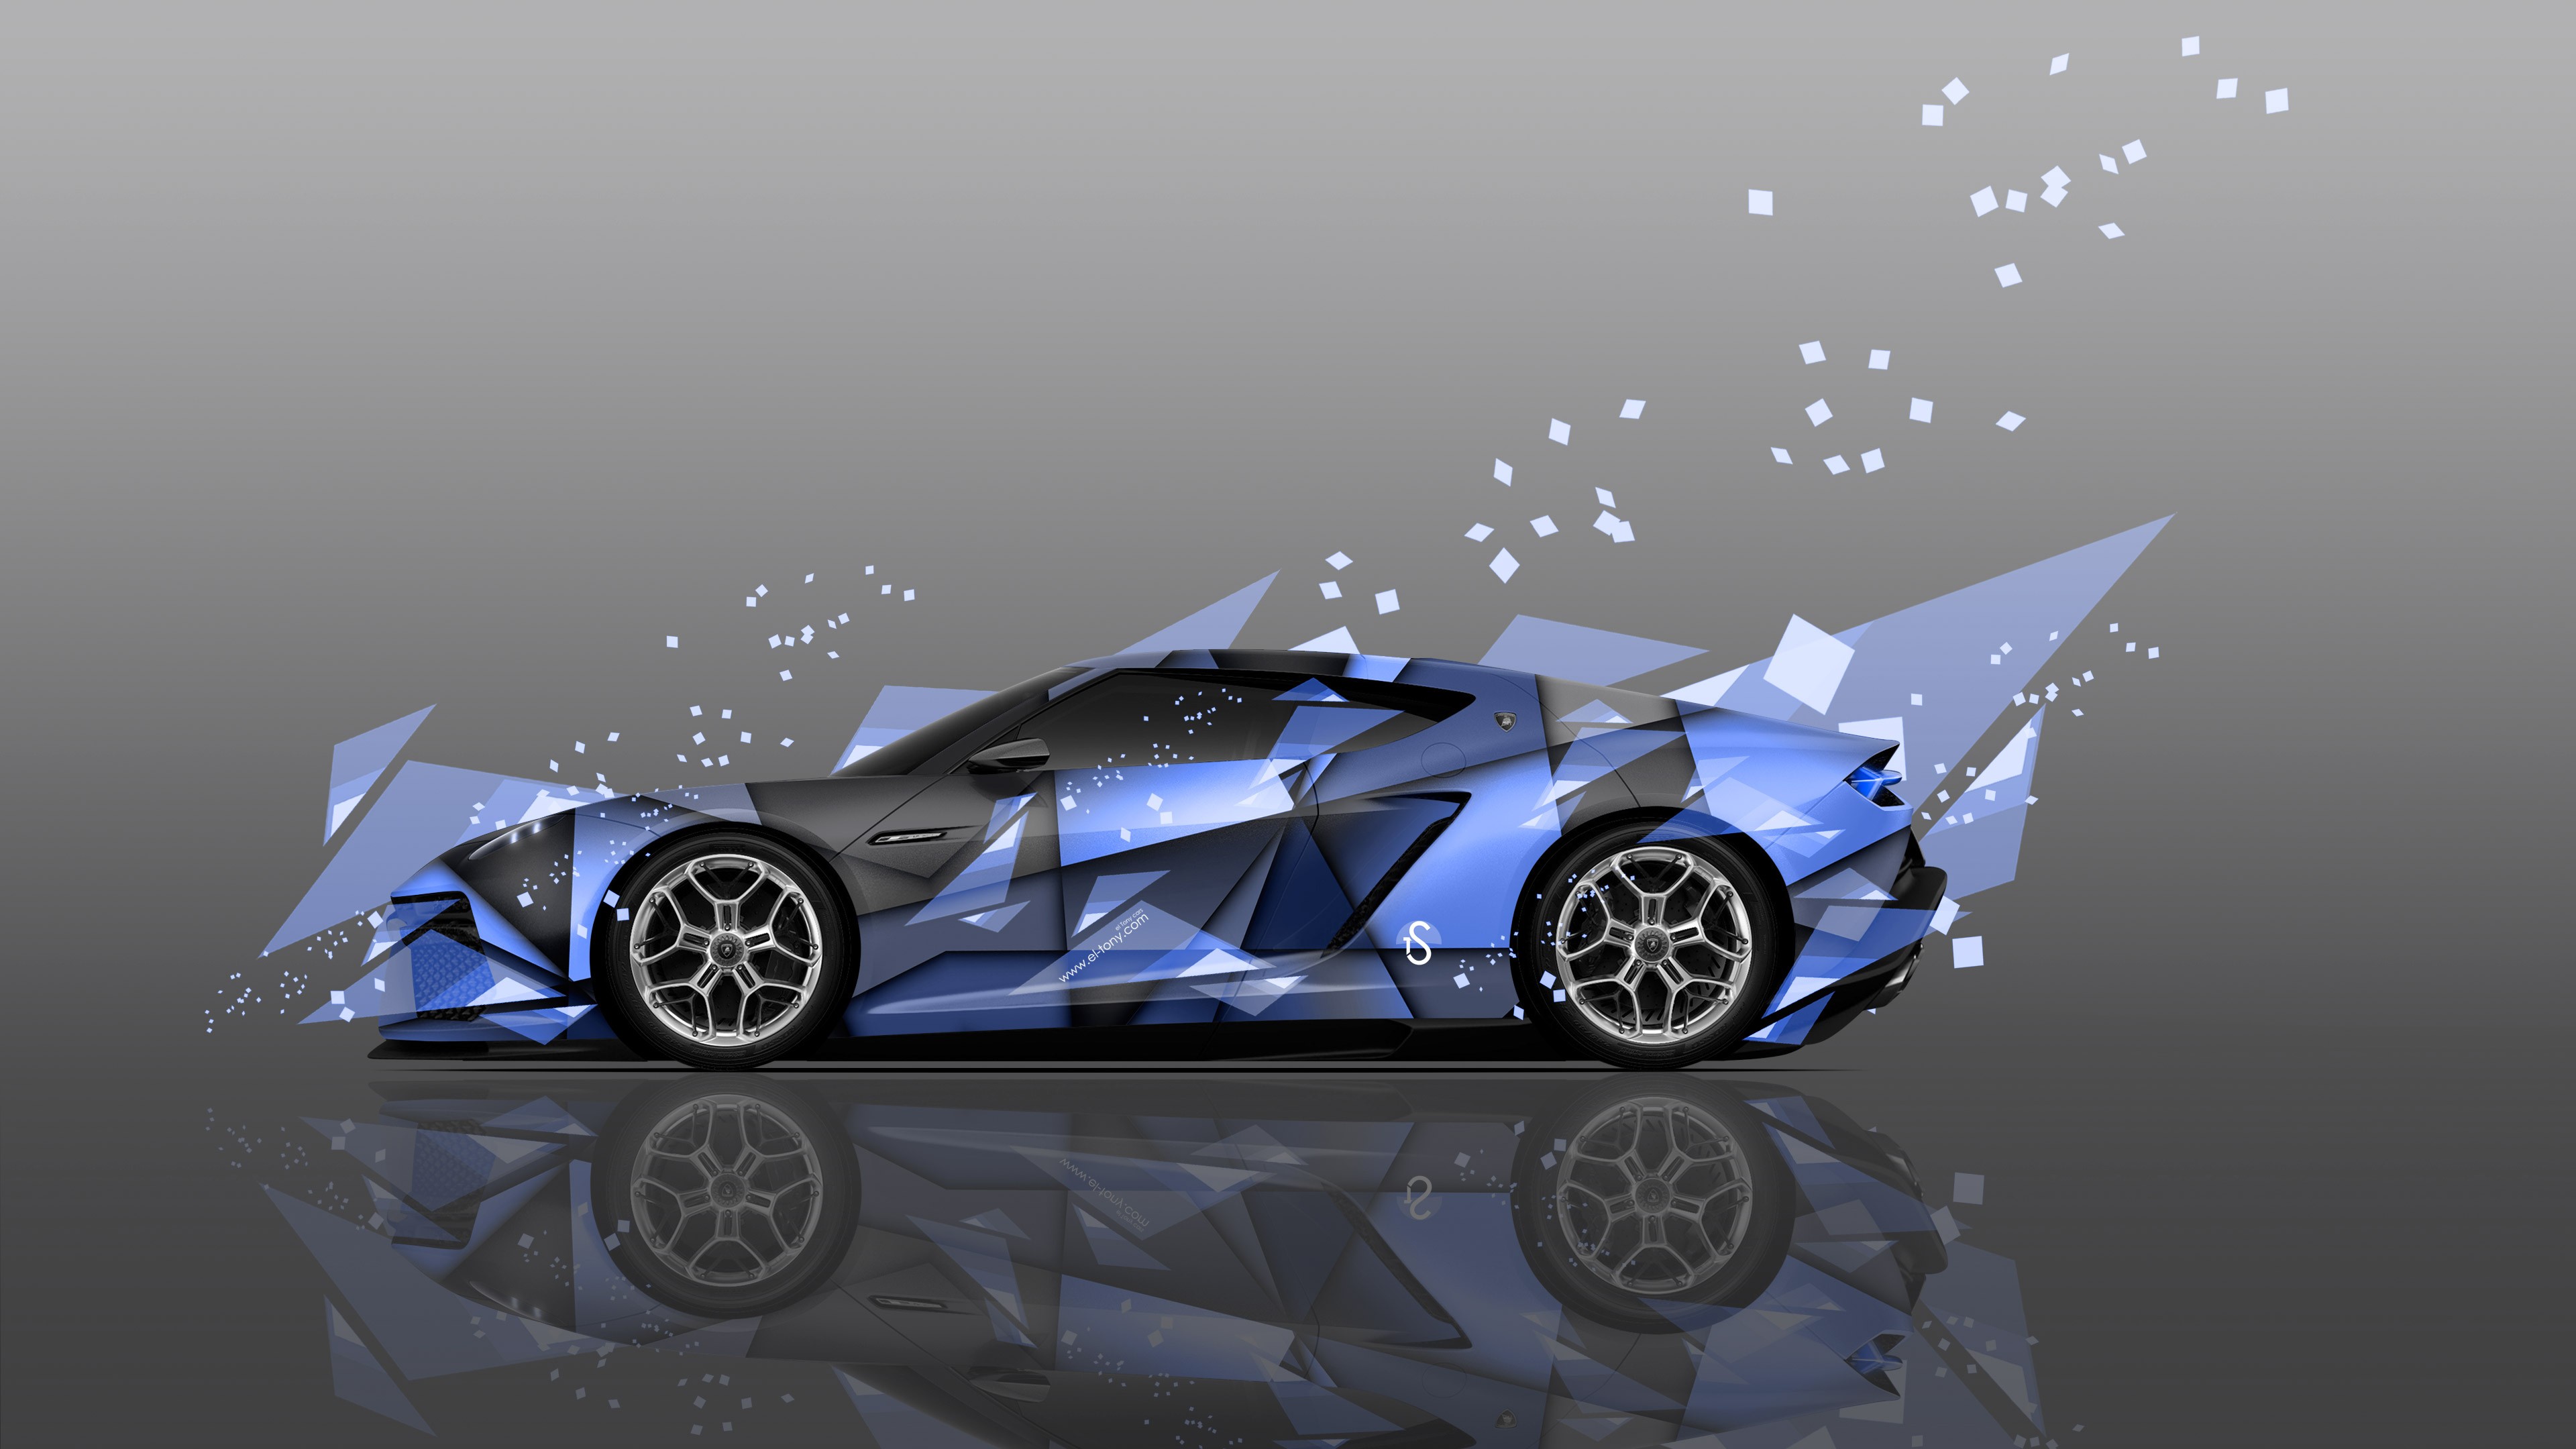 Lamborghini, Italian Supercars, Super Car, Car, Digital art, Geometry, Reflection, Lamborghini Asterion Wallpaper